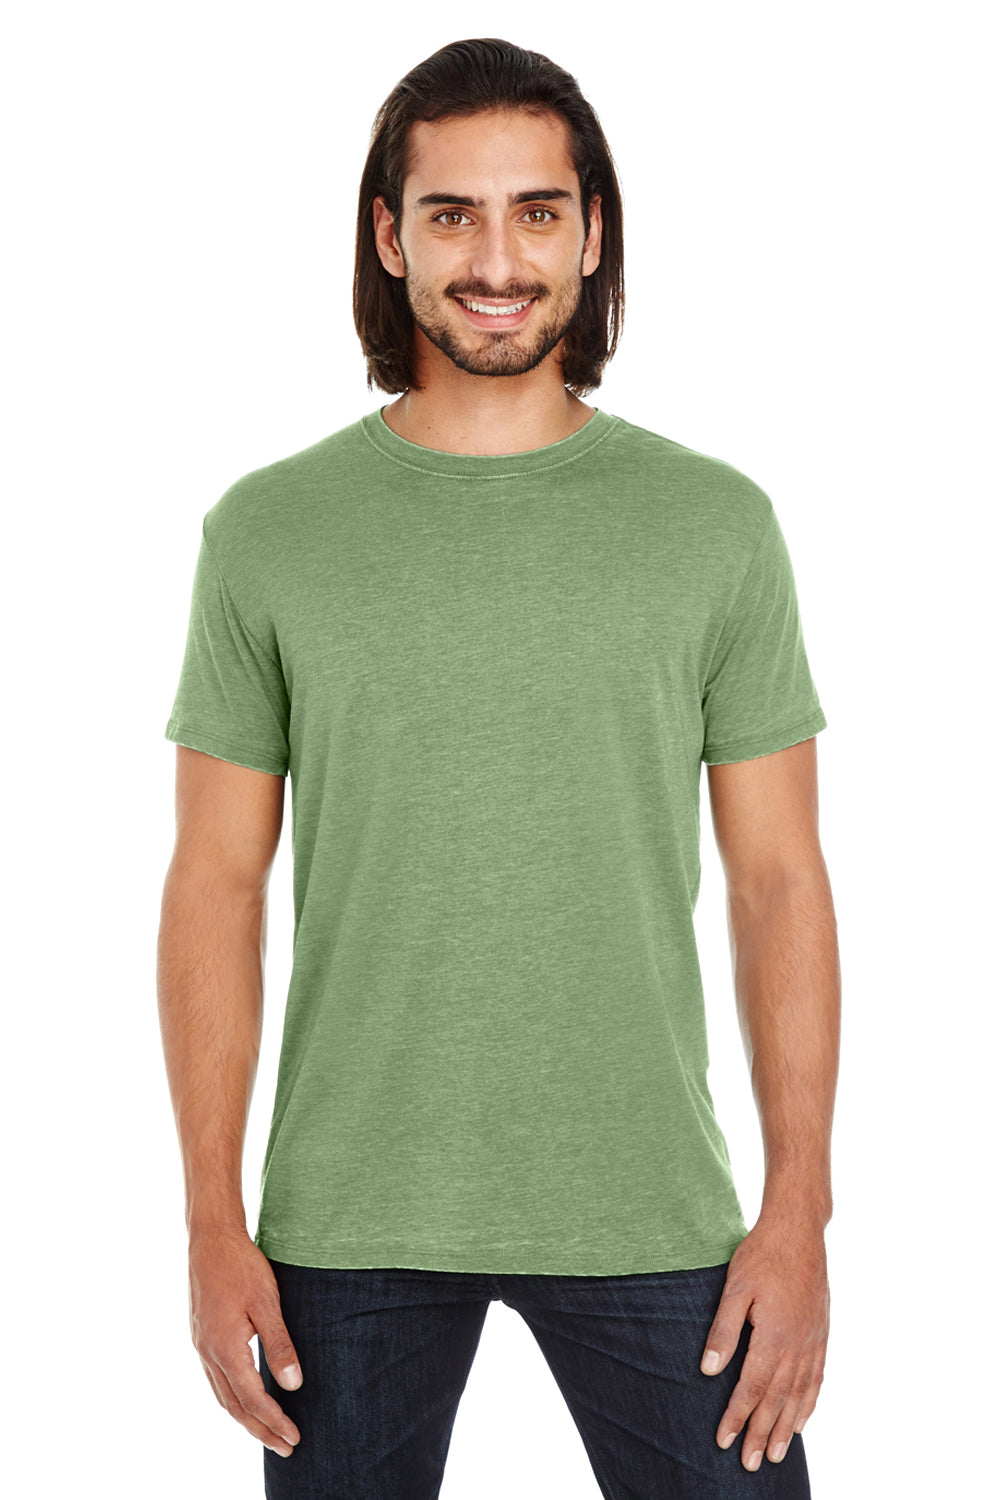 Threadfast Apparel 108A Mens Vintage Dye Short Sleeve Crewneck T-Shirt Grass Green Front